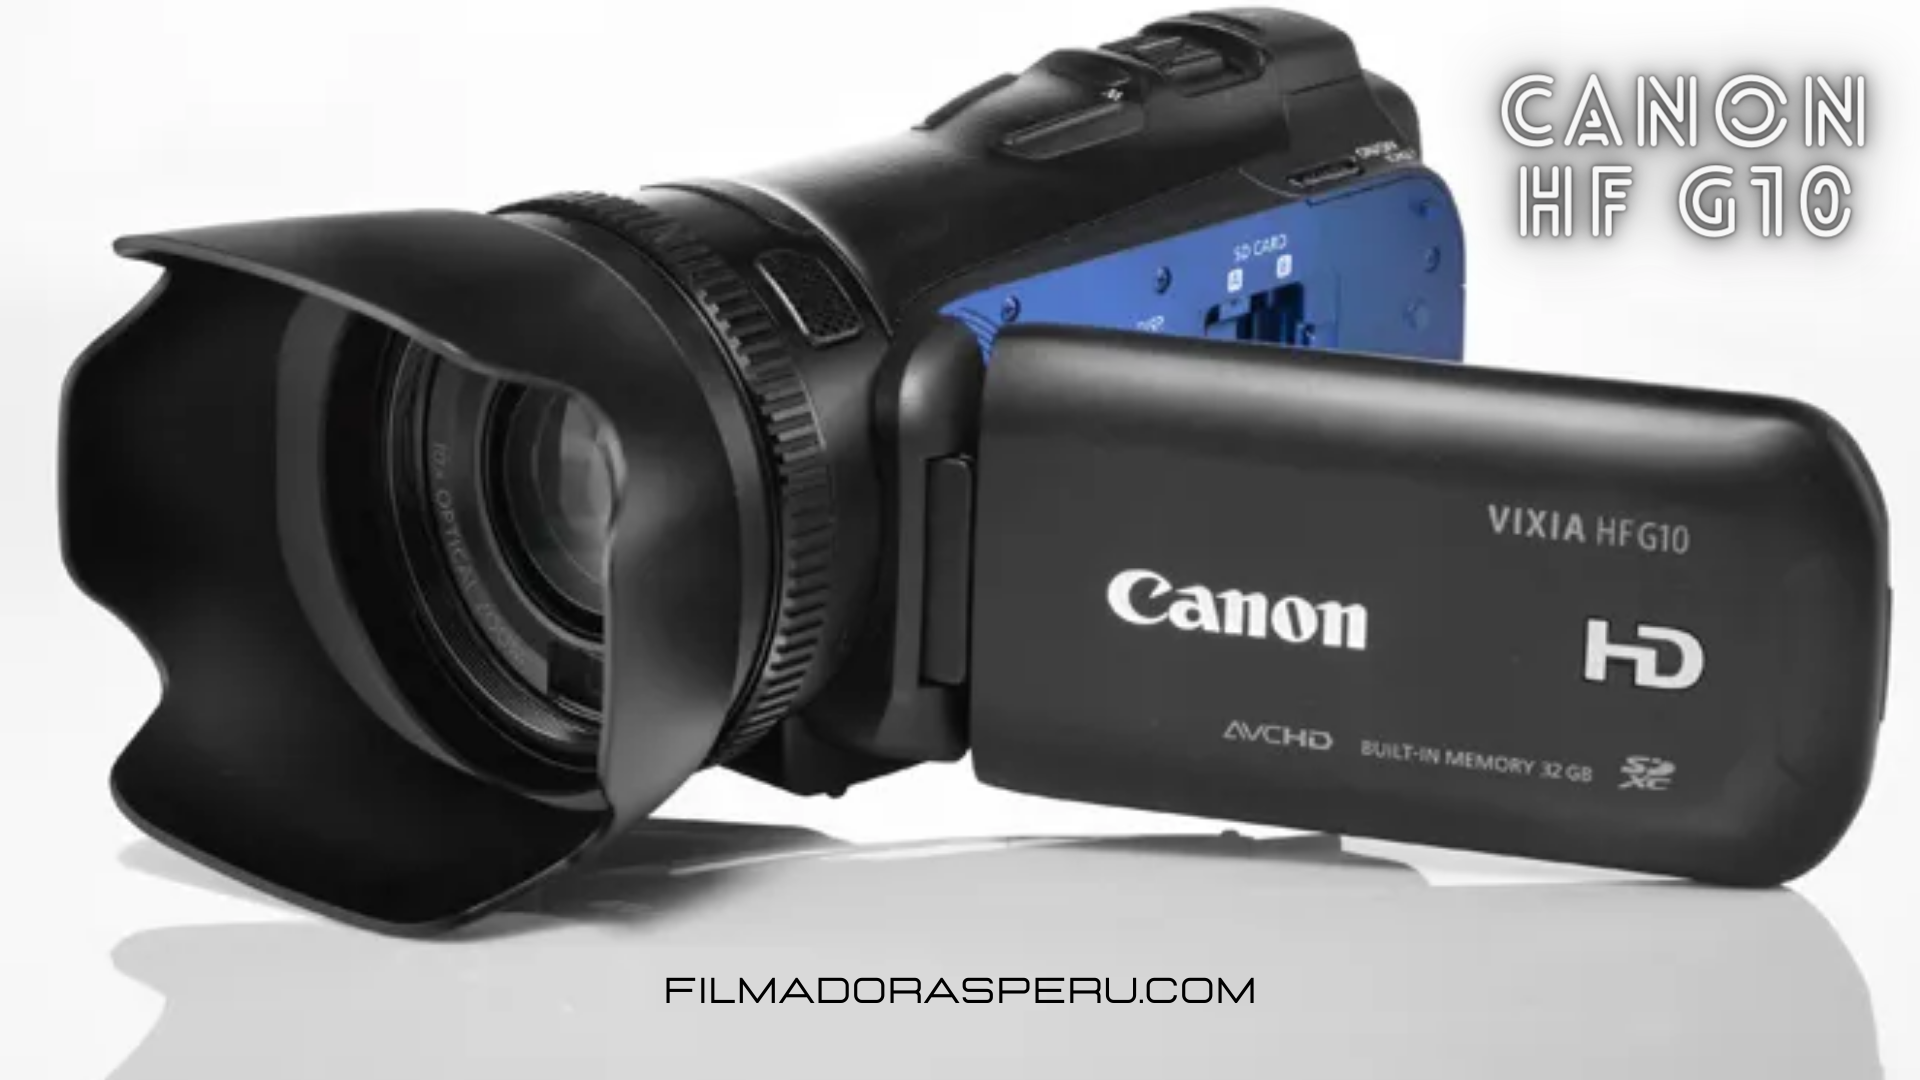 Capturar Fácilmente Impresionante videos con Canon HF G10